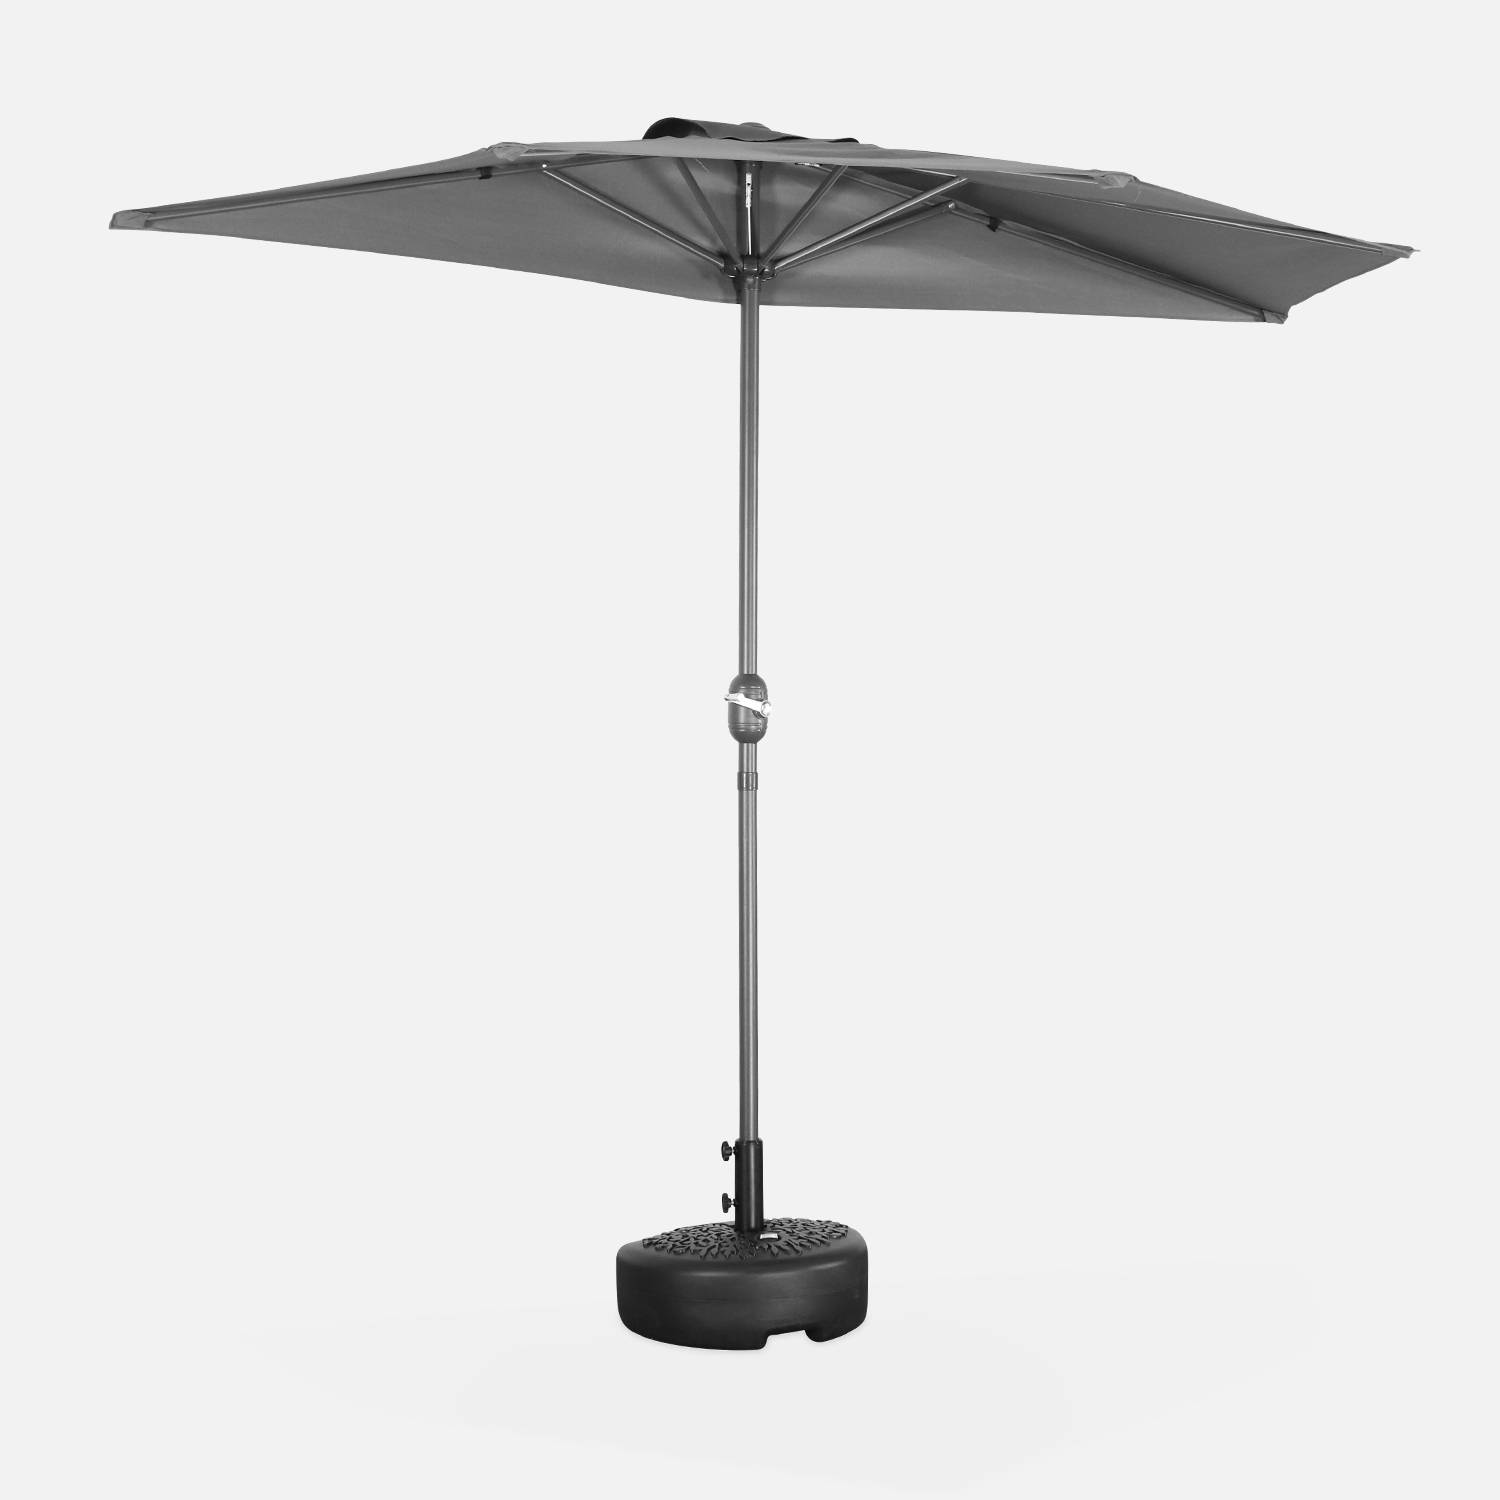  Parasol para balcón Ø250cm - CALVI - Medio parasol recto, mástil de aluminio con manivela, tejido gris | sweeek